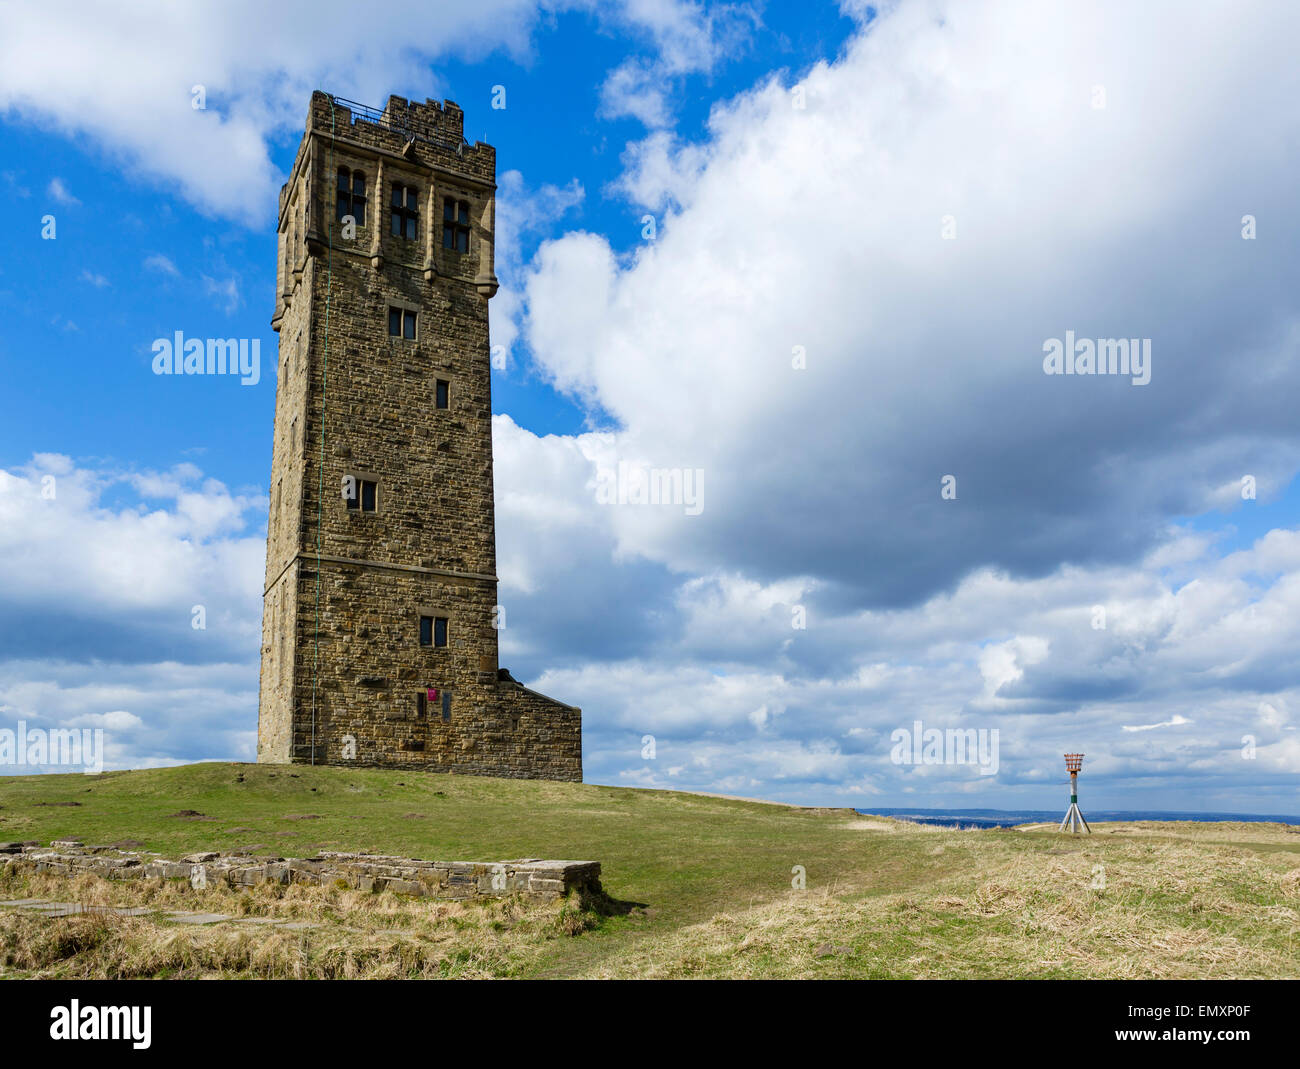 La Tour Victoria Jubilee ou sur la colline du Château, Huddersfield, West Yorkshire, Angleterre Banque D'Images